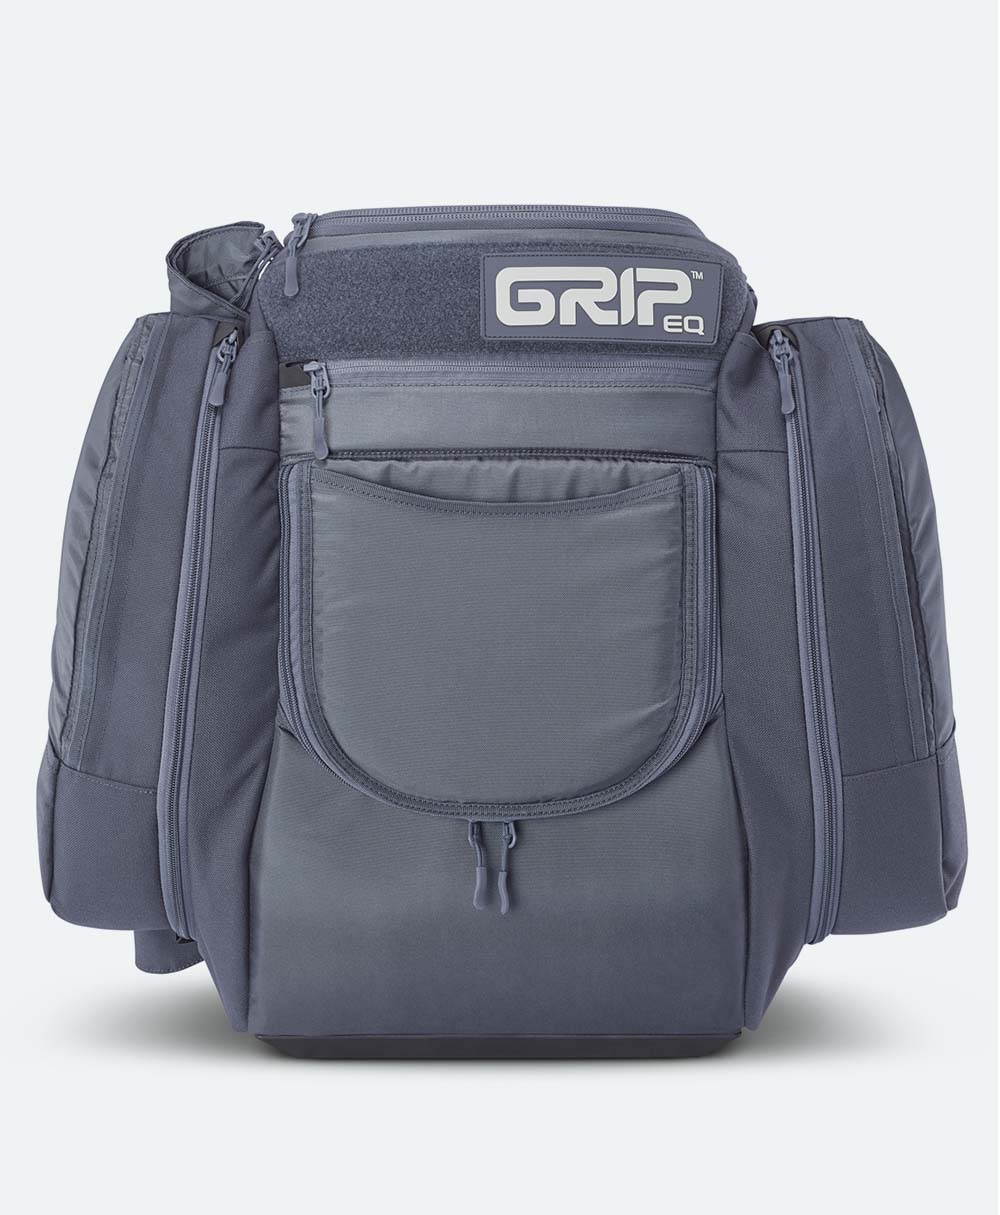 GRIP AX5 Series Bag